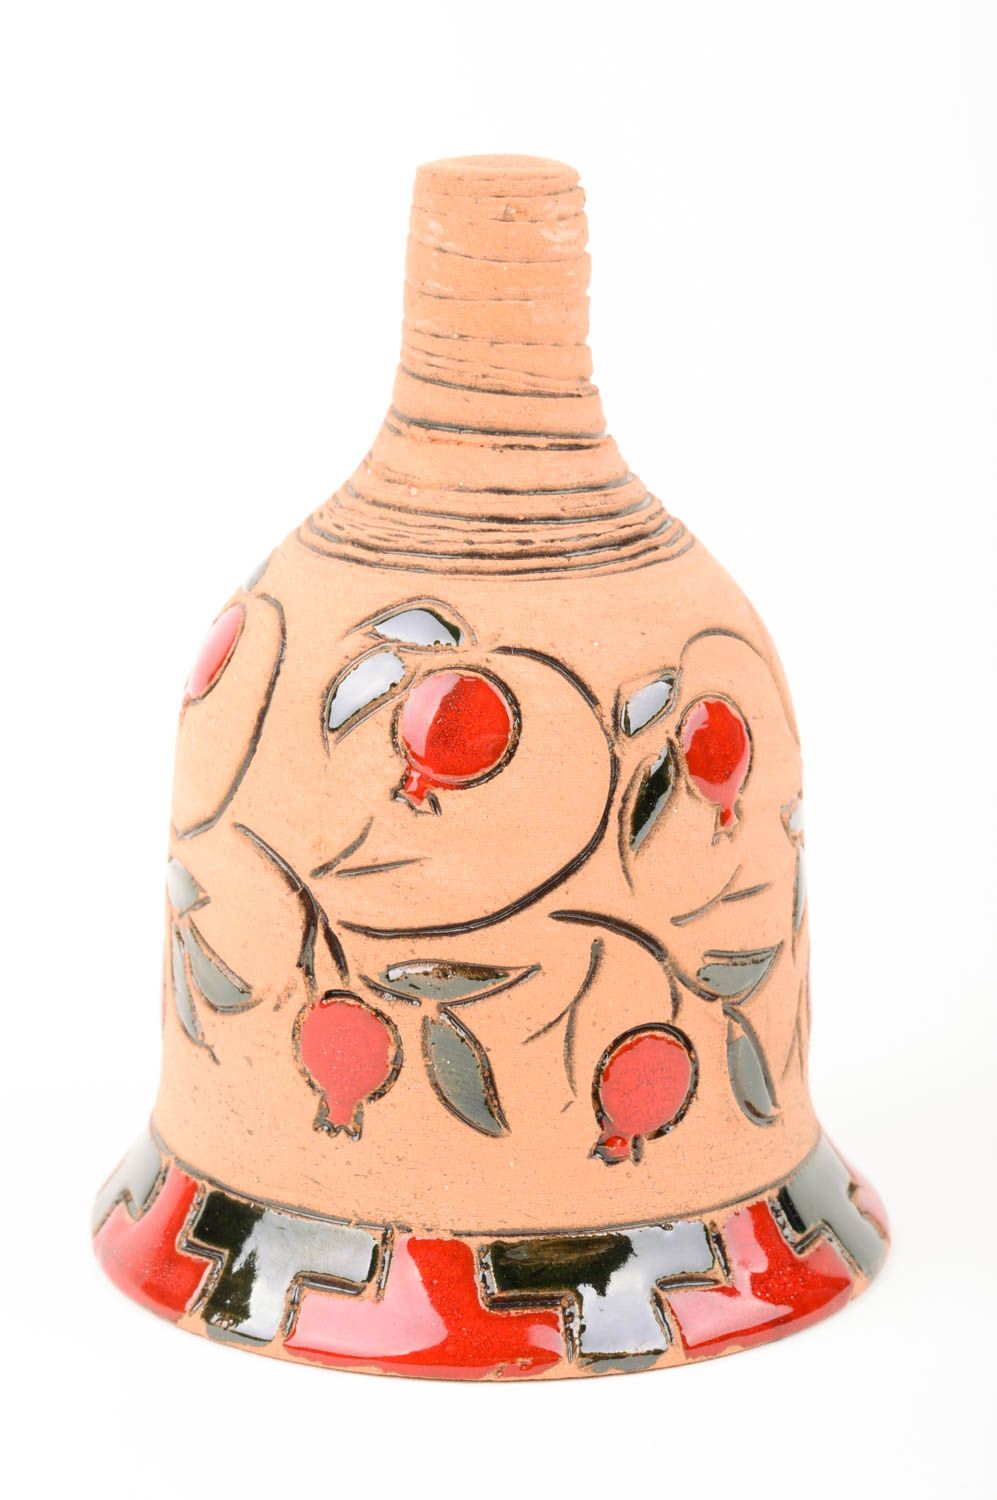 Колокольчик из глины ручной работы глиняный сувенир керамический колокольчик  фото 1